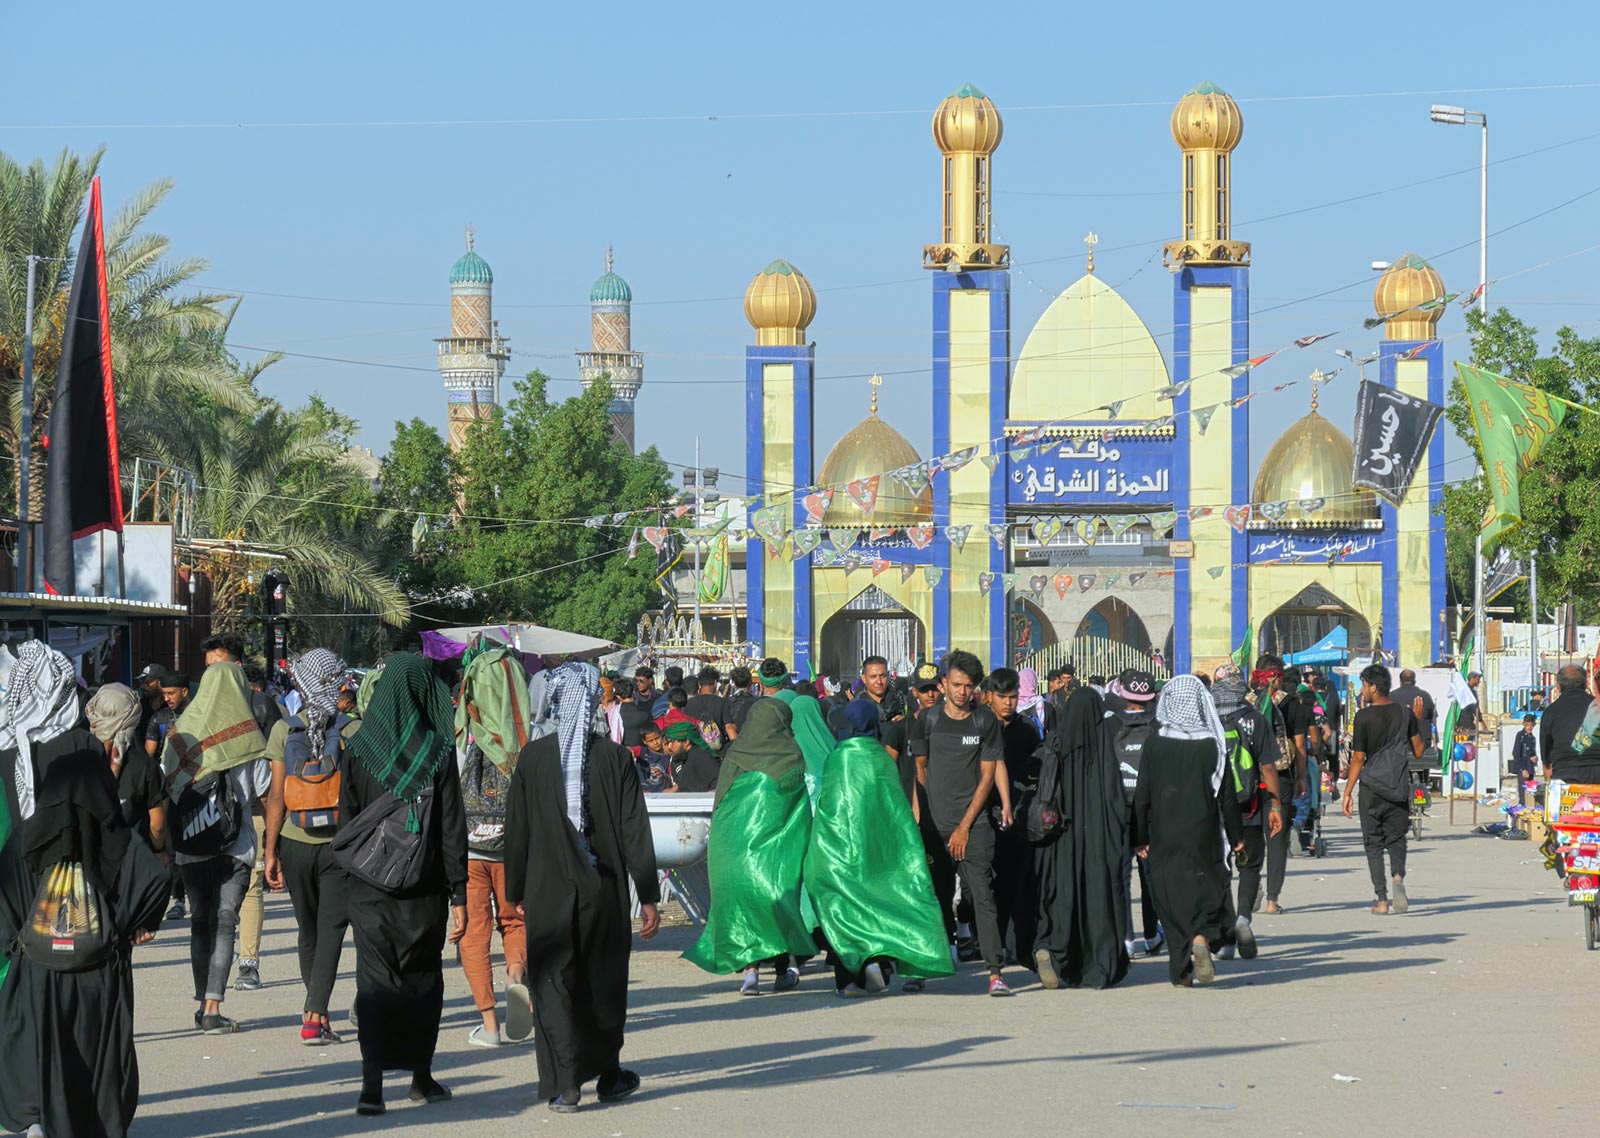 Peregrinos caminhando para o Santuário de Alhamza Alsharqi, Qadisiya